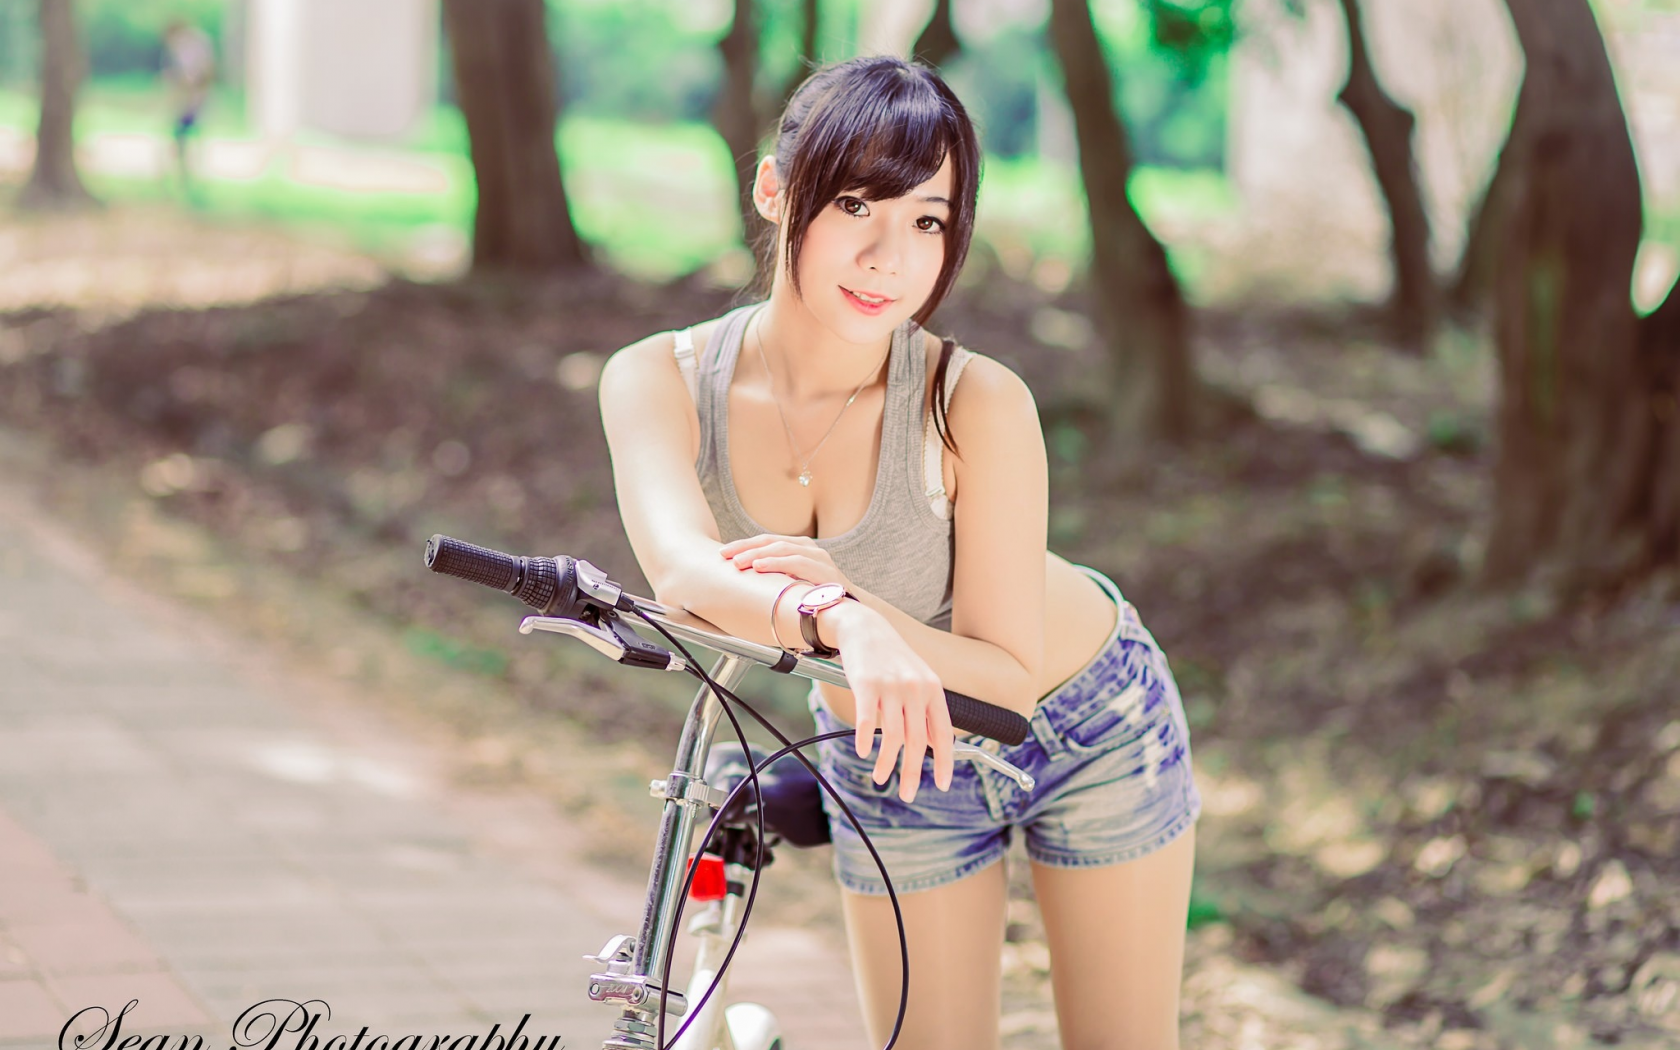 девушка, модель, милая, красивая, стройная, азиатка, велосипед, шорты, майка